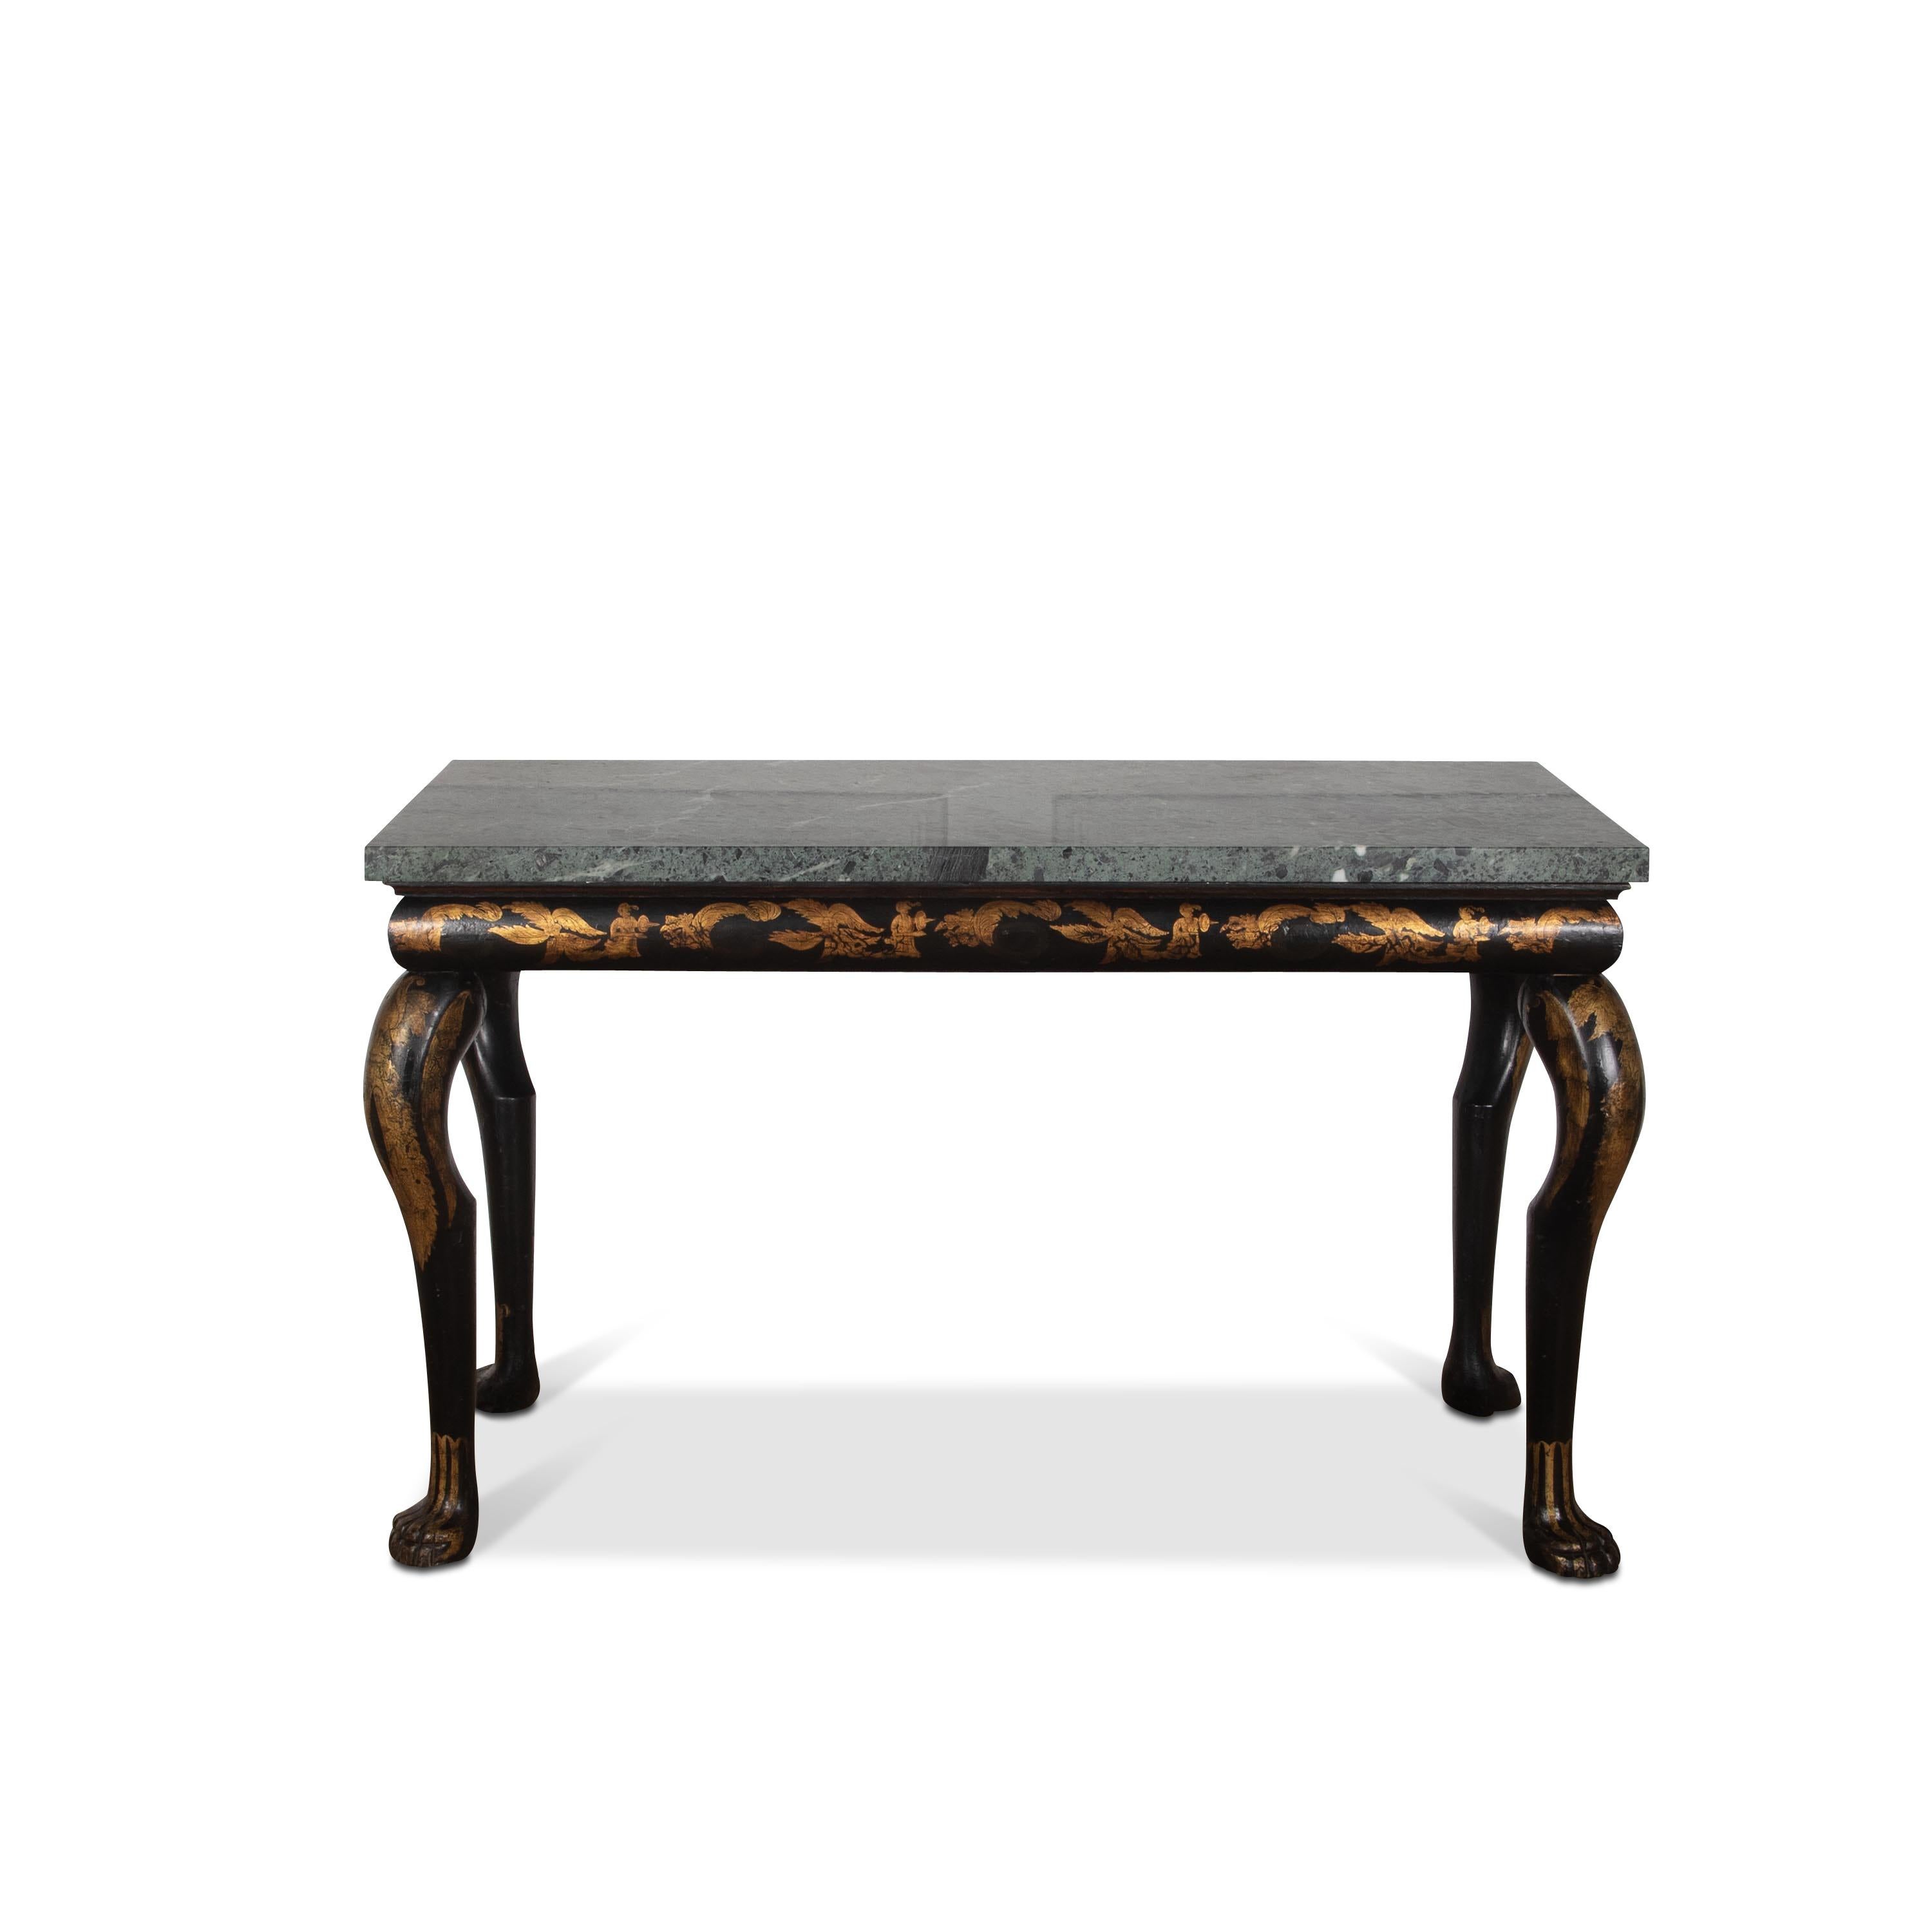  Table d'appoint/console en marbre noir et doré de style chinois du début du 19e siècle. Le plateau en marbre vert grec est surmonté d'une frise de coussins avec des pieds en cabriole exagérés et des pieds en patte d'oie stylisés. L'ensemble est